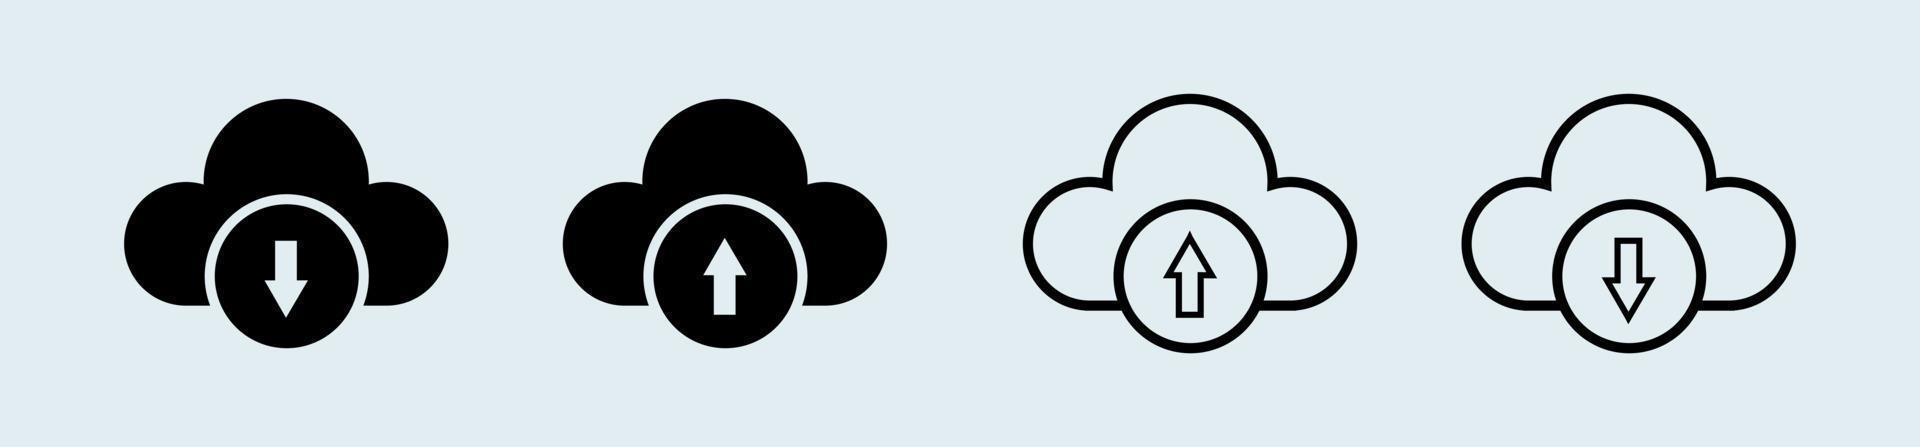 Herunterladen und Hochladen auf Cloud-Symbol in schwarzer Farbe. Vektor-Illustration. vektor